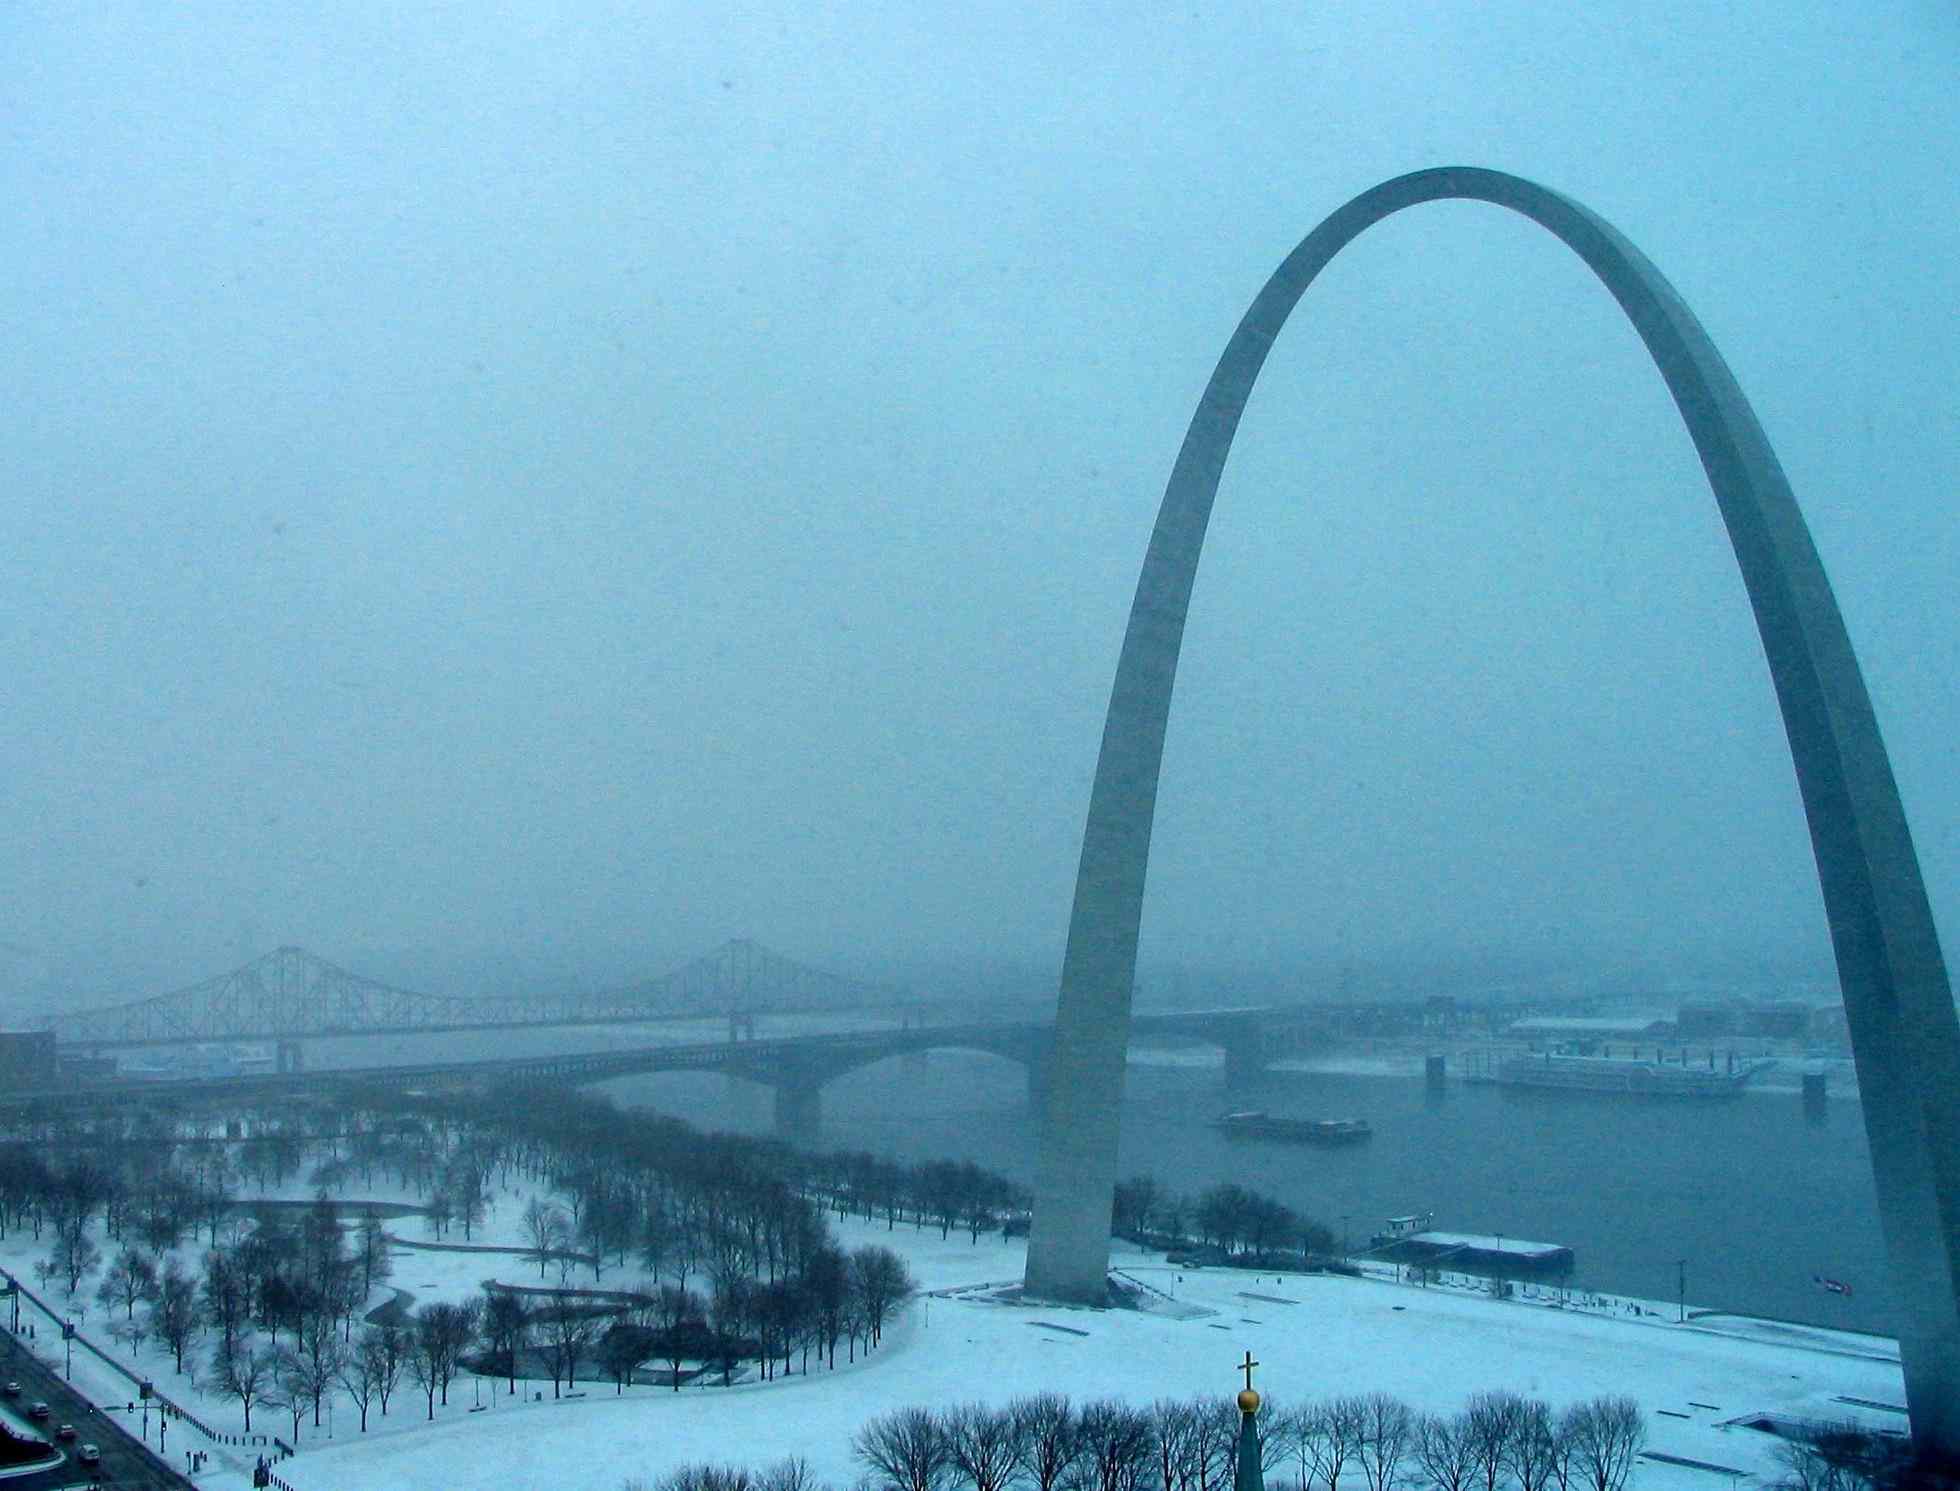 arch landscape in snow - lo res.jpg